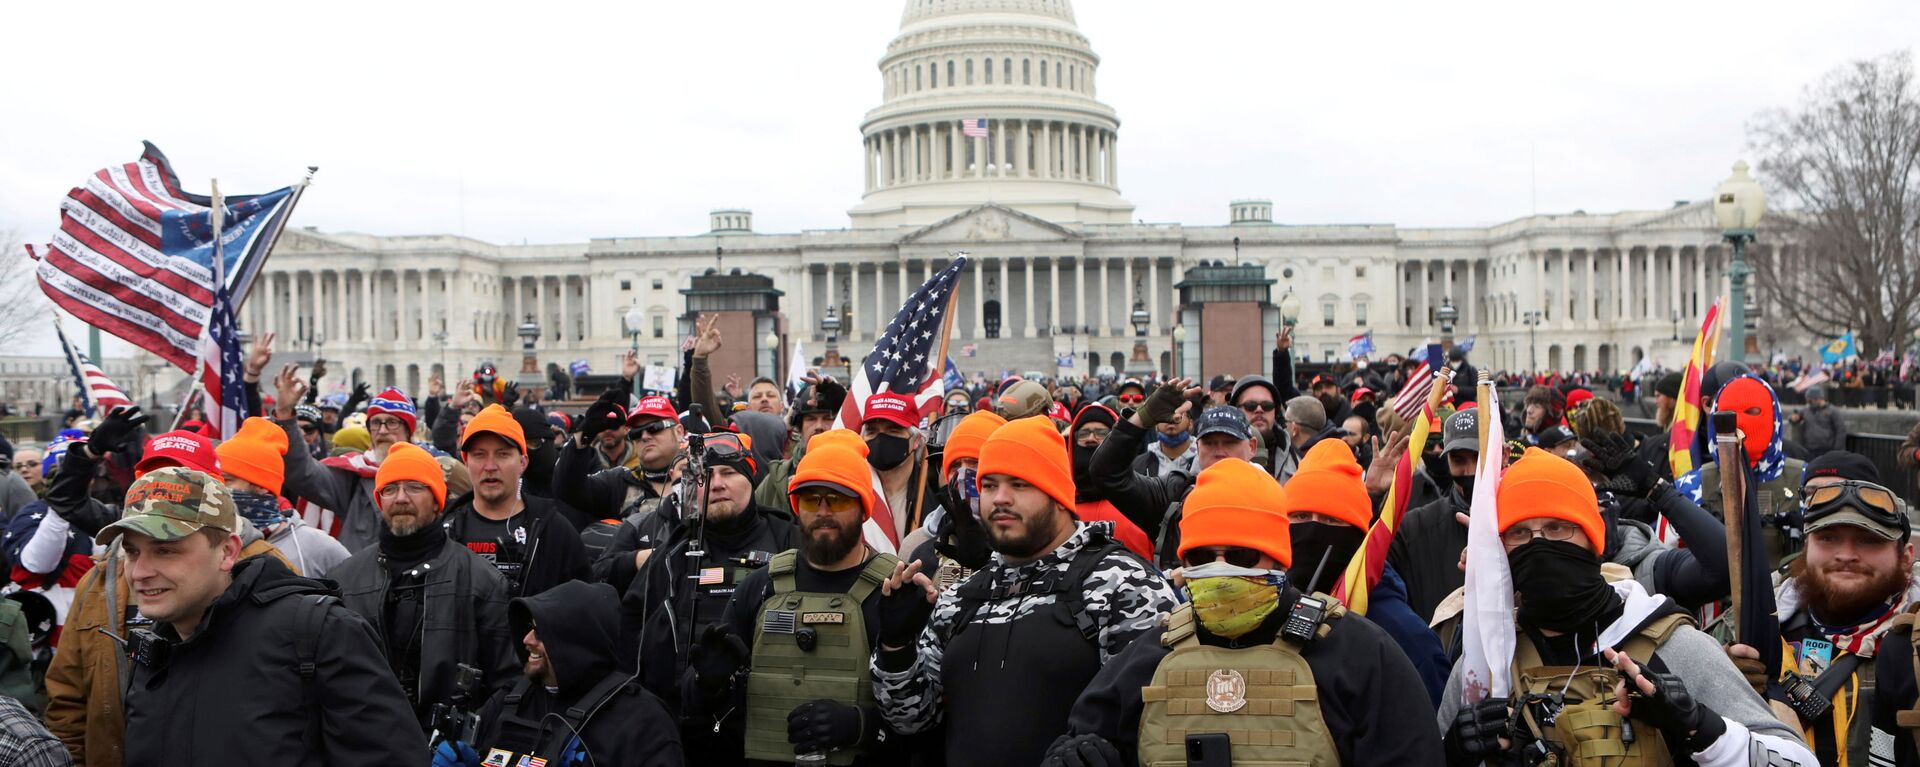 Membros do Proud Boys, grupo de extrema-direita, fazem gestos de mão OK indicando poder branco, em protesto junto do Capitólio em Washington, EUA, 6 de janeiro de 2021 - Sputnik Brasil, 1920, 14.12.2021